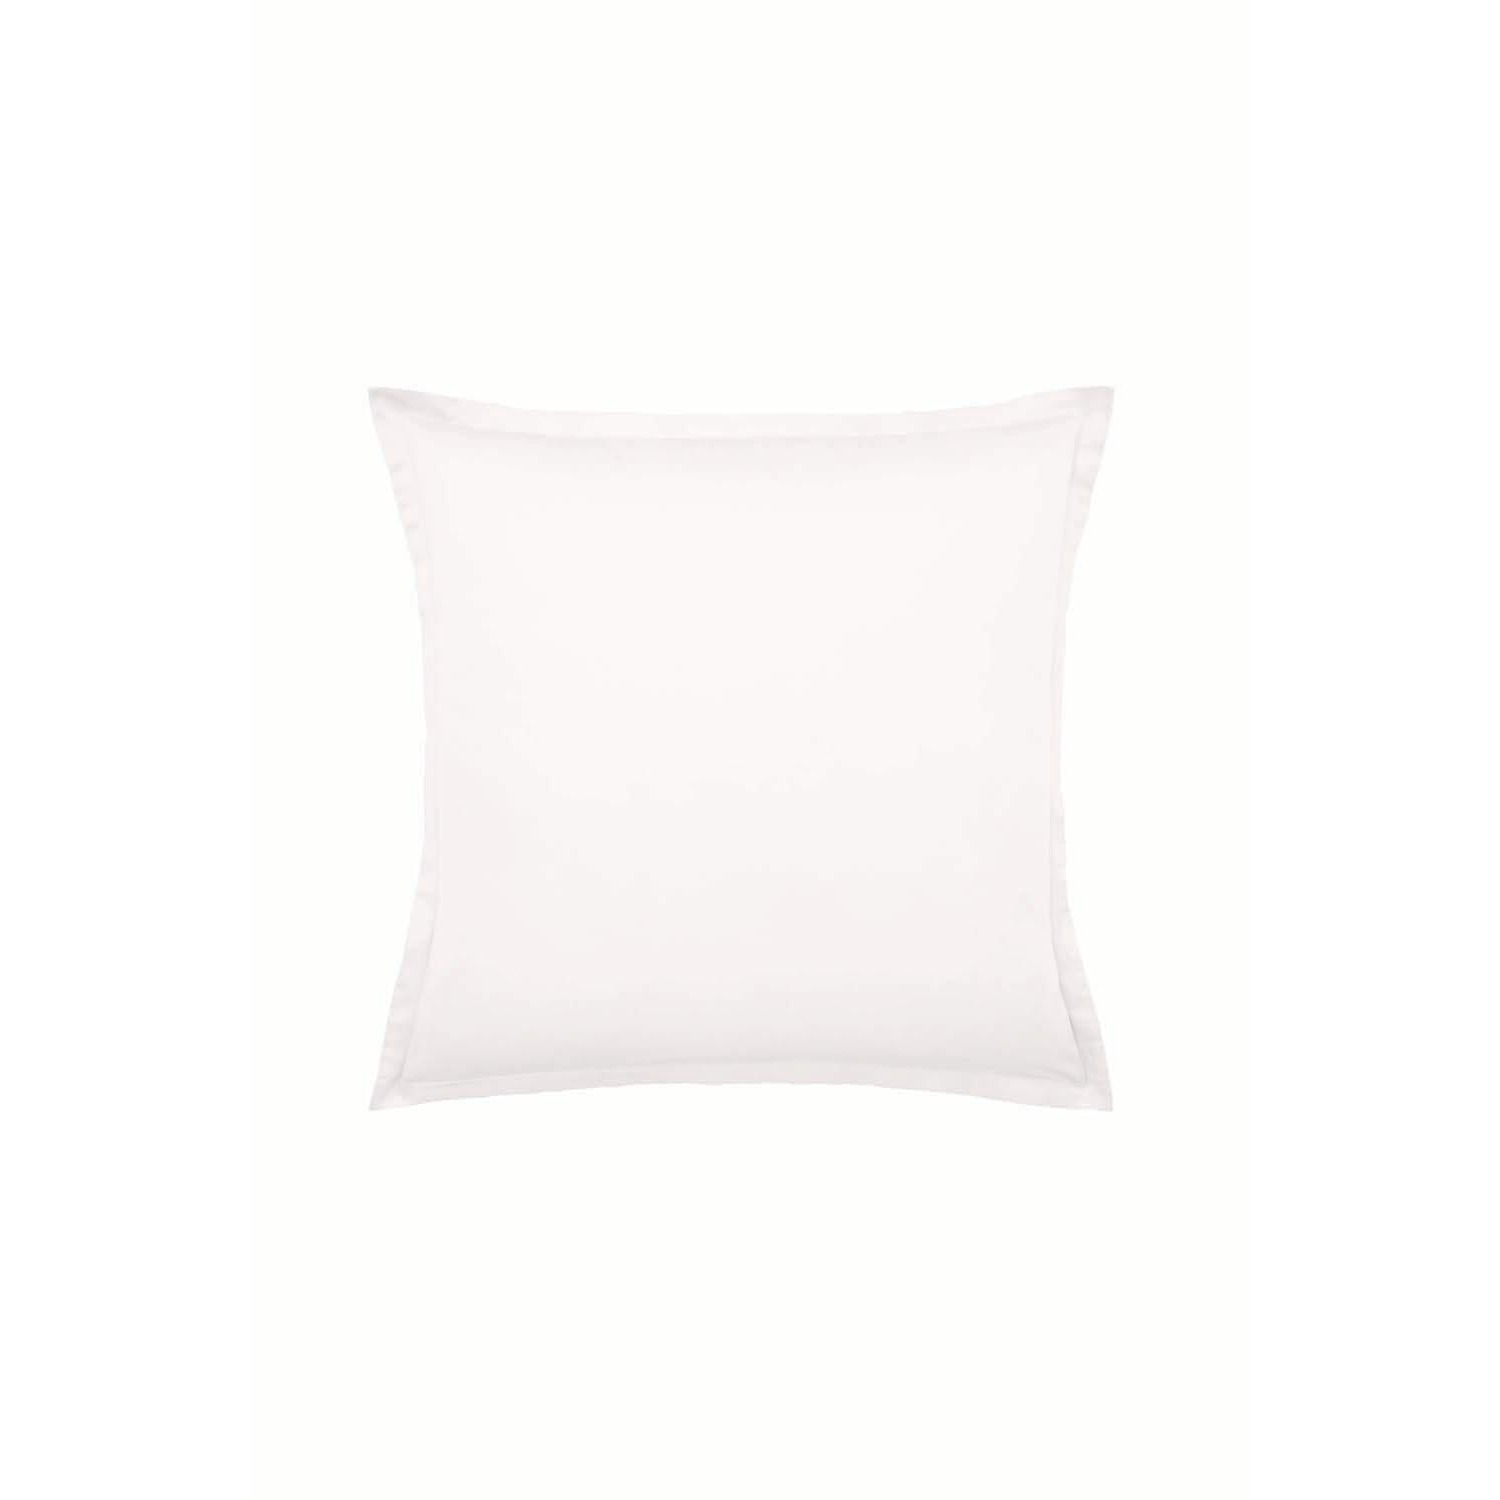 'Murmur 1000TC Plain Dye' Egyptian Cotton Square Pillowcase - image 1